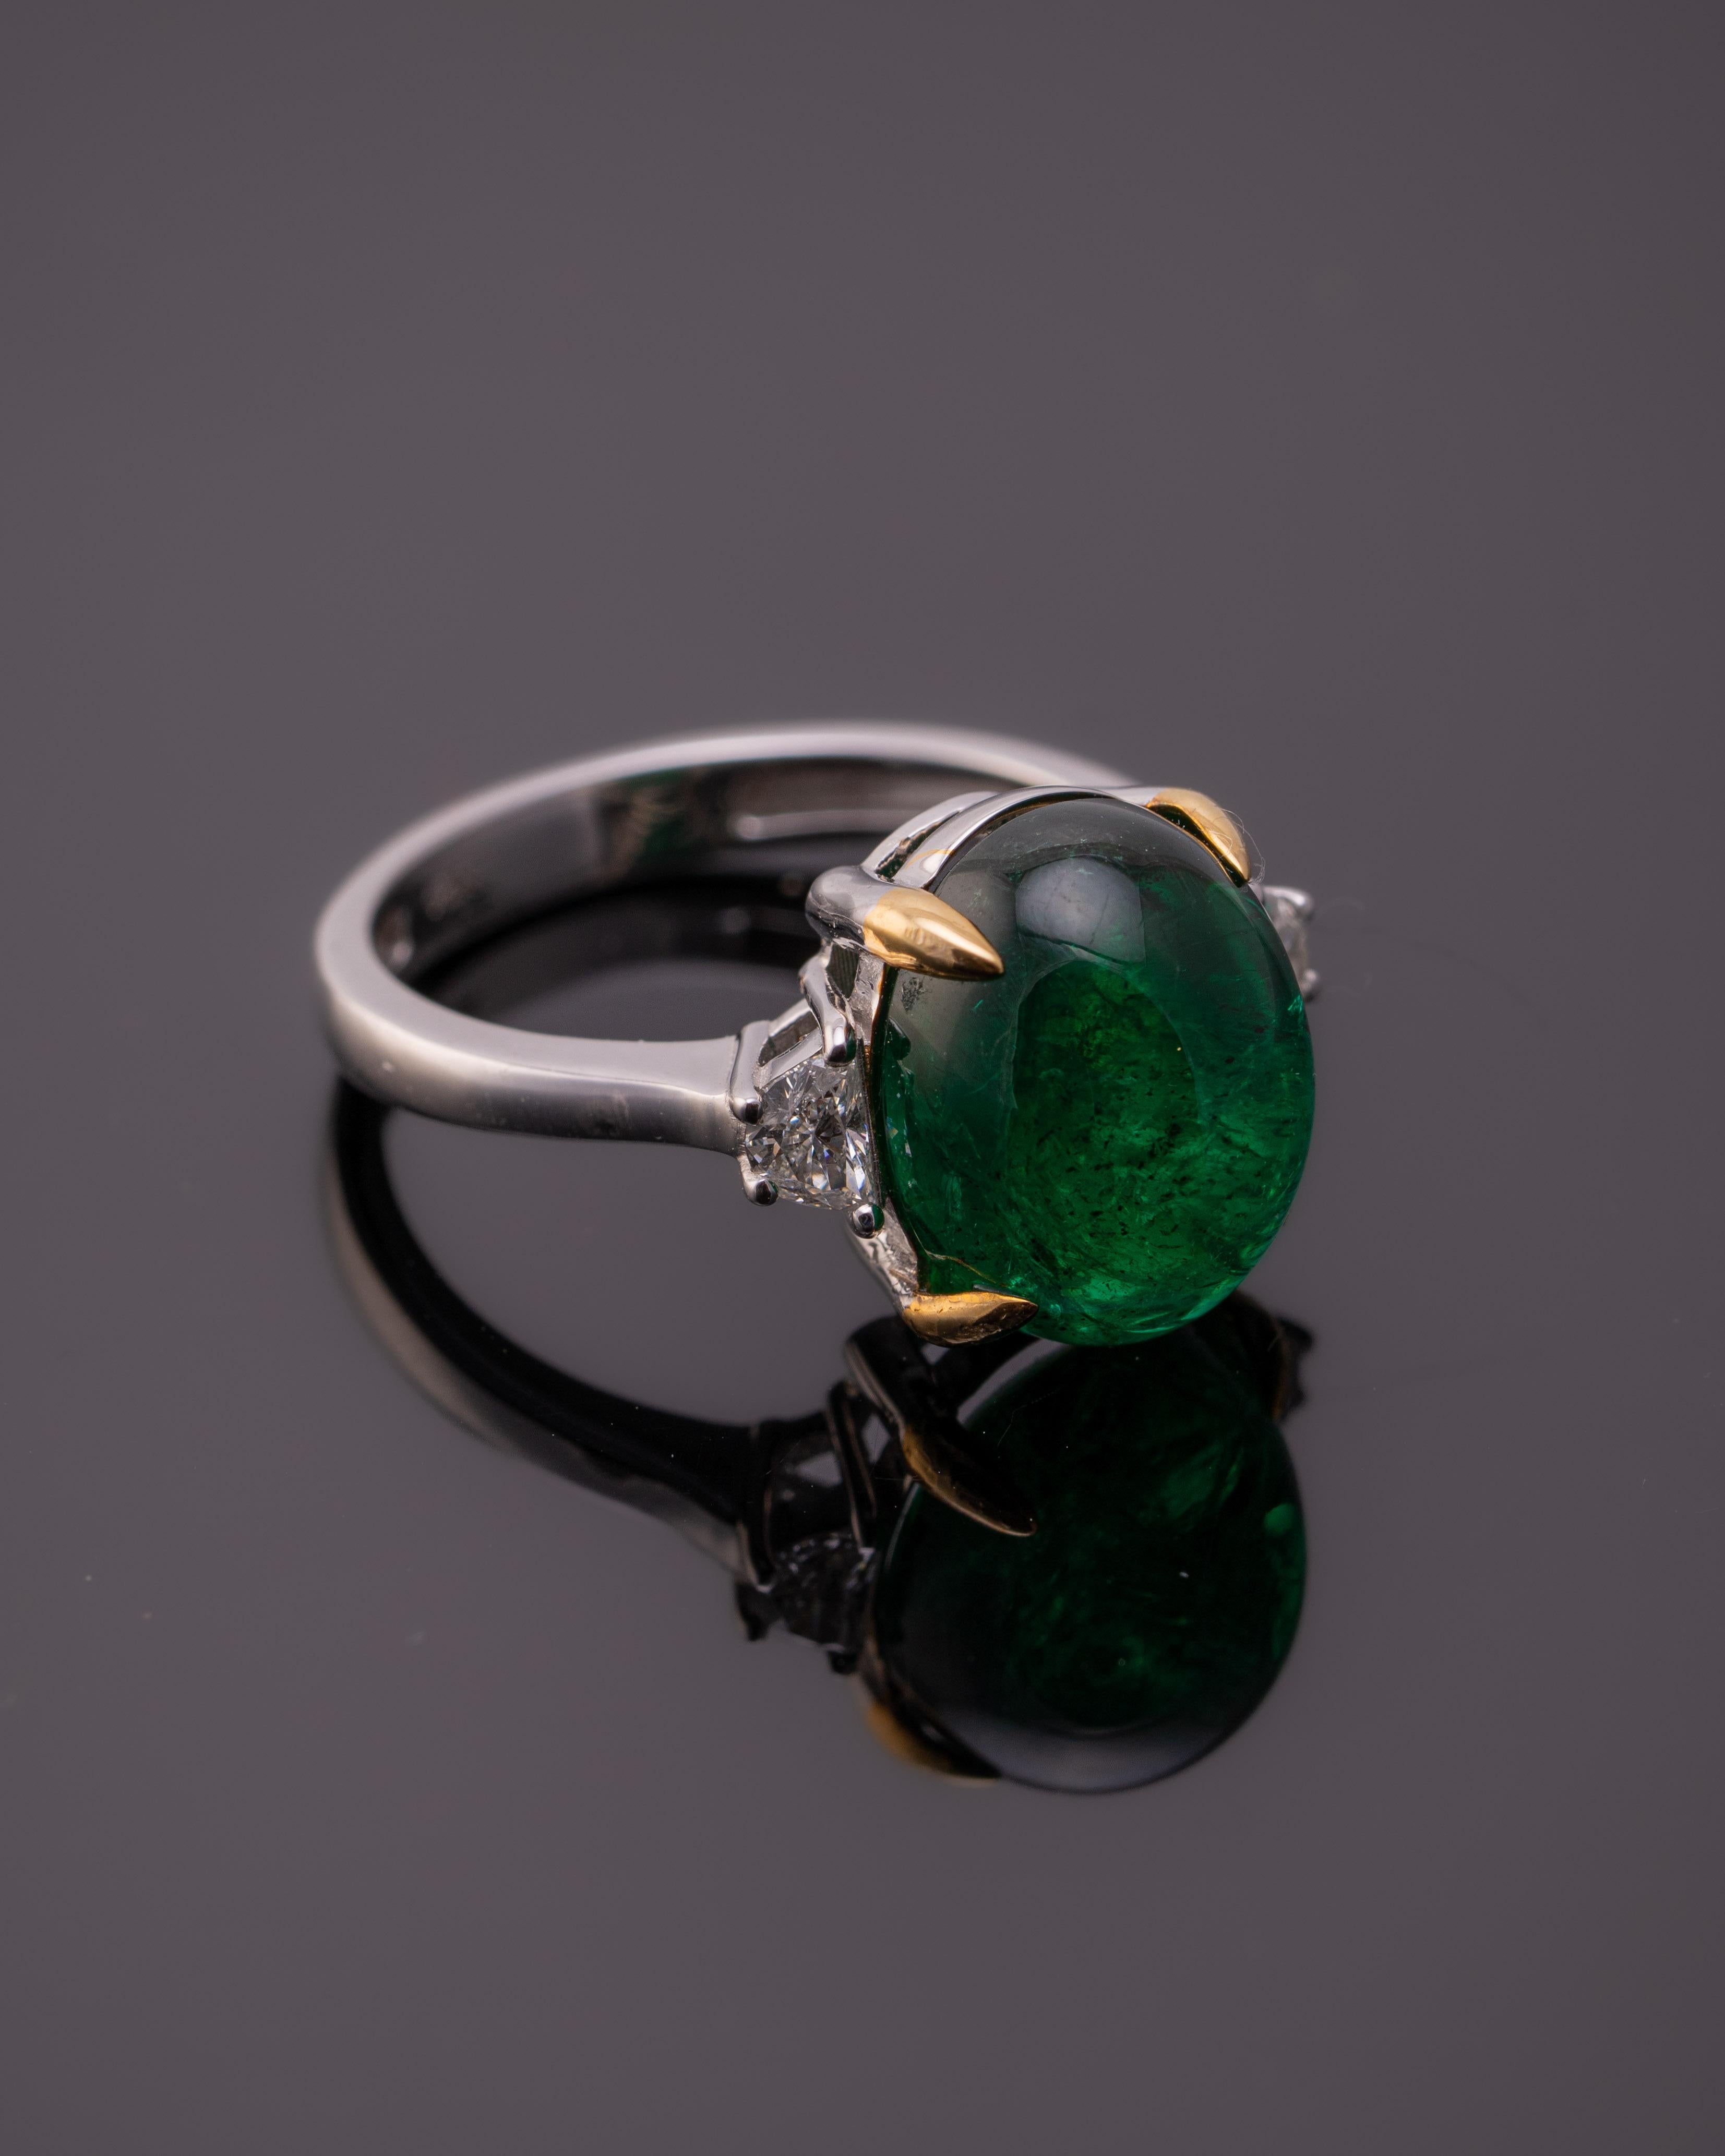 emerald cabochon stone